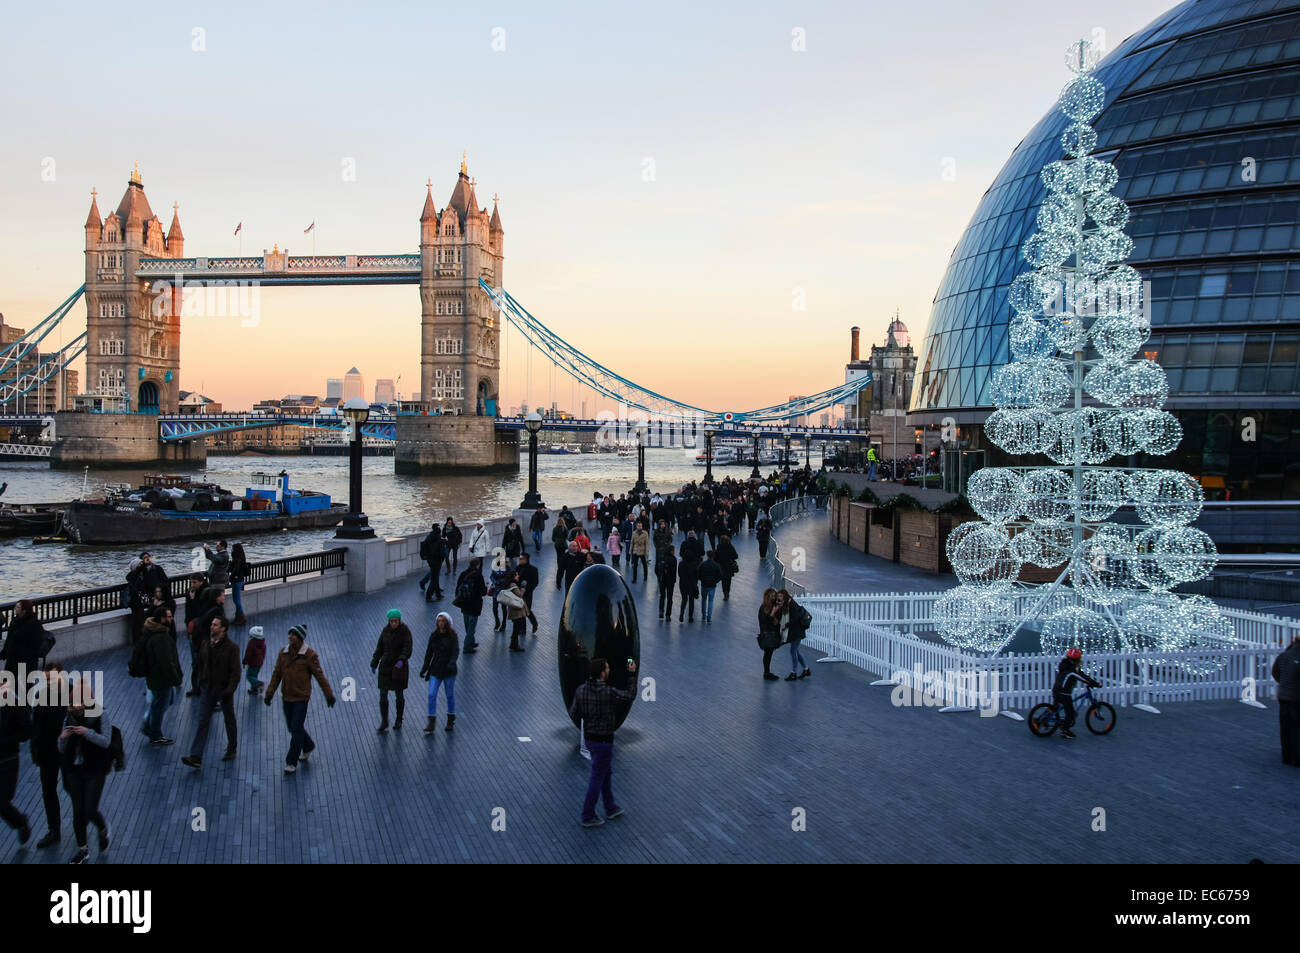 Weihnachtsschmuck am Südufer der Themse, London England Vereinigtes Königreich UK Stockfoto